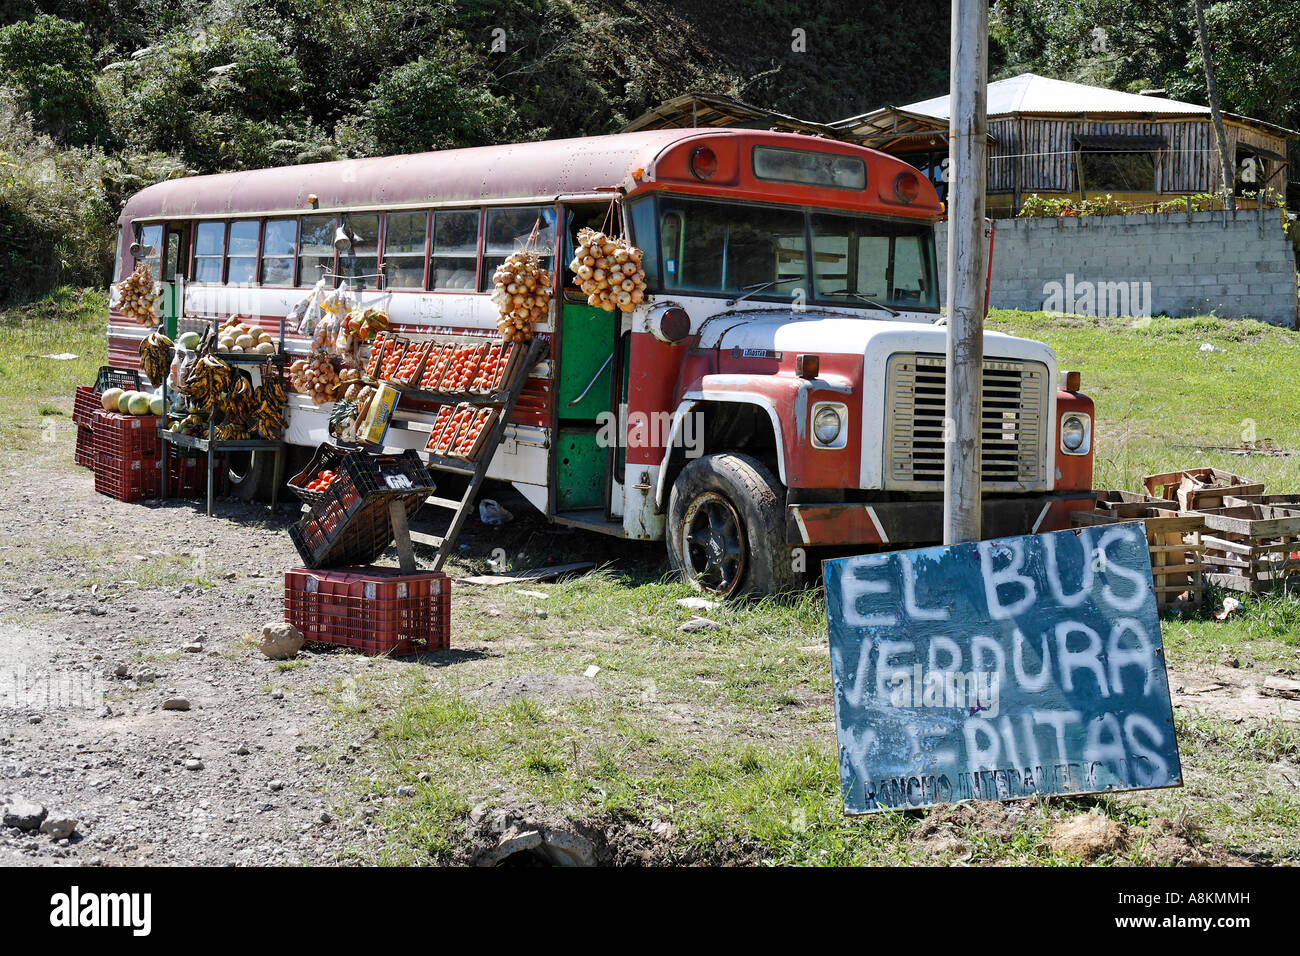 Venta de frutas y hortalizas en el viejo autobús, 'El bus' Frutas y  verdura, Costa Rica Fotografía de stock - Alamy